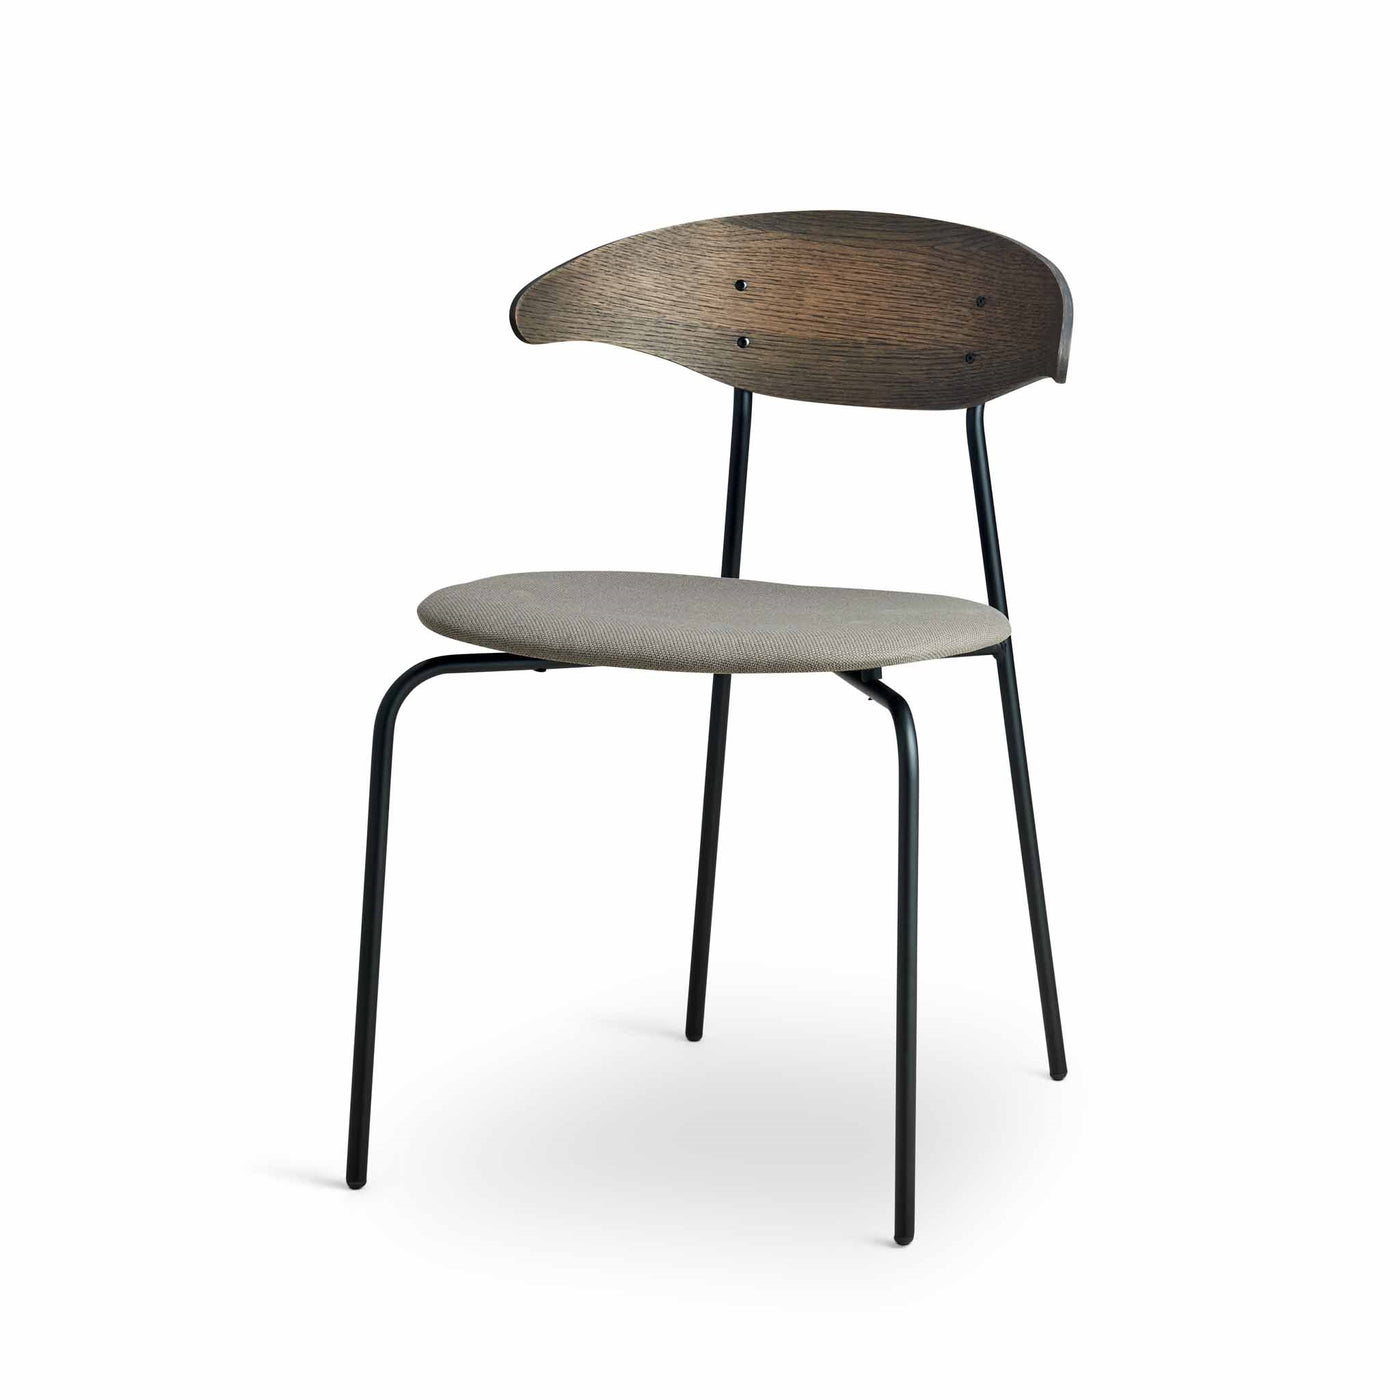 Arki Ram Steel spisebordsstol fra Kristensen & Kristensen i mørk olieret egetræ med et sæde monteret i slidstærkt møbelstof